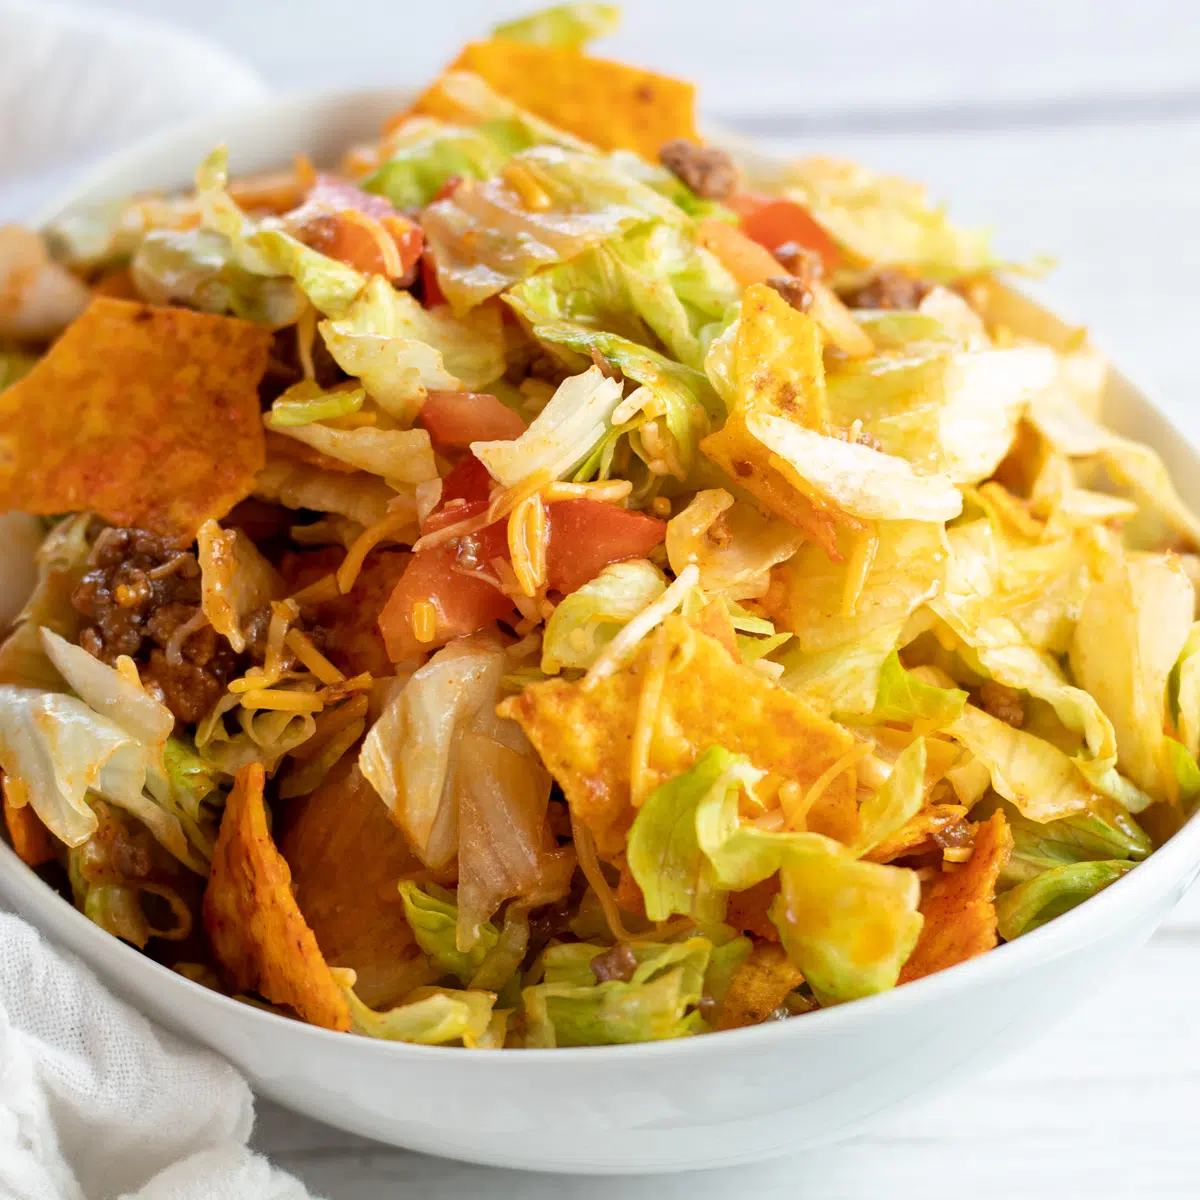 Čtvercový obrázek taco salátu Doritos v bílé misce.